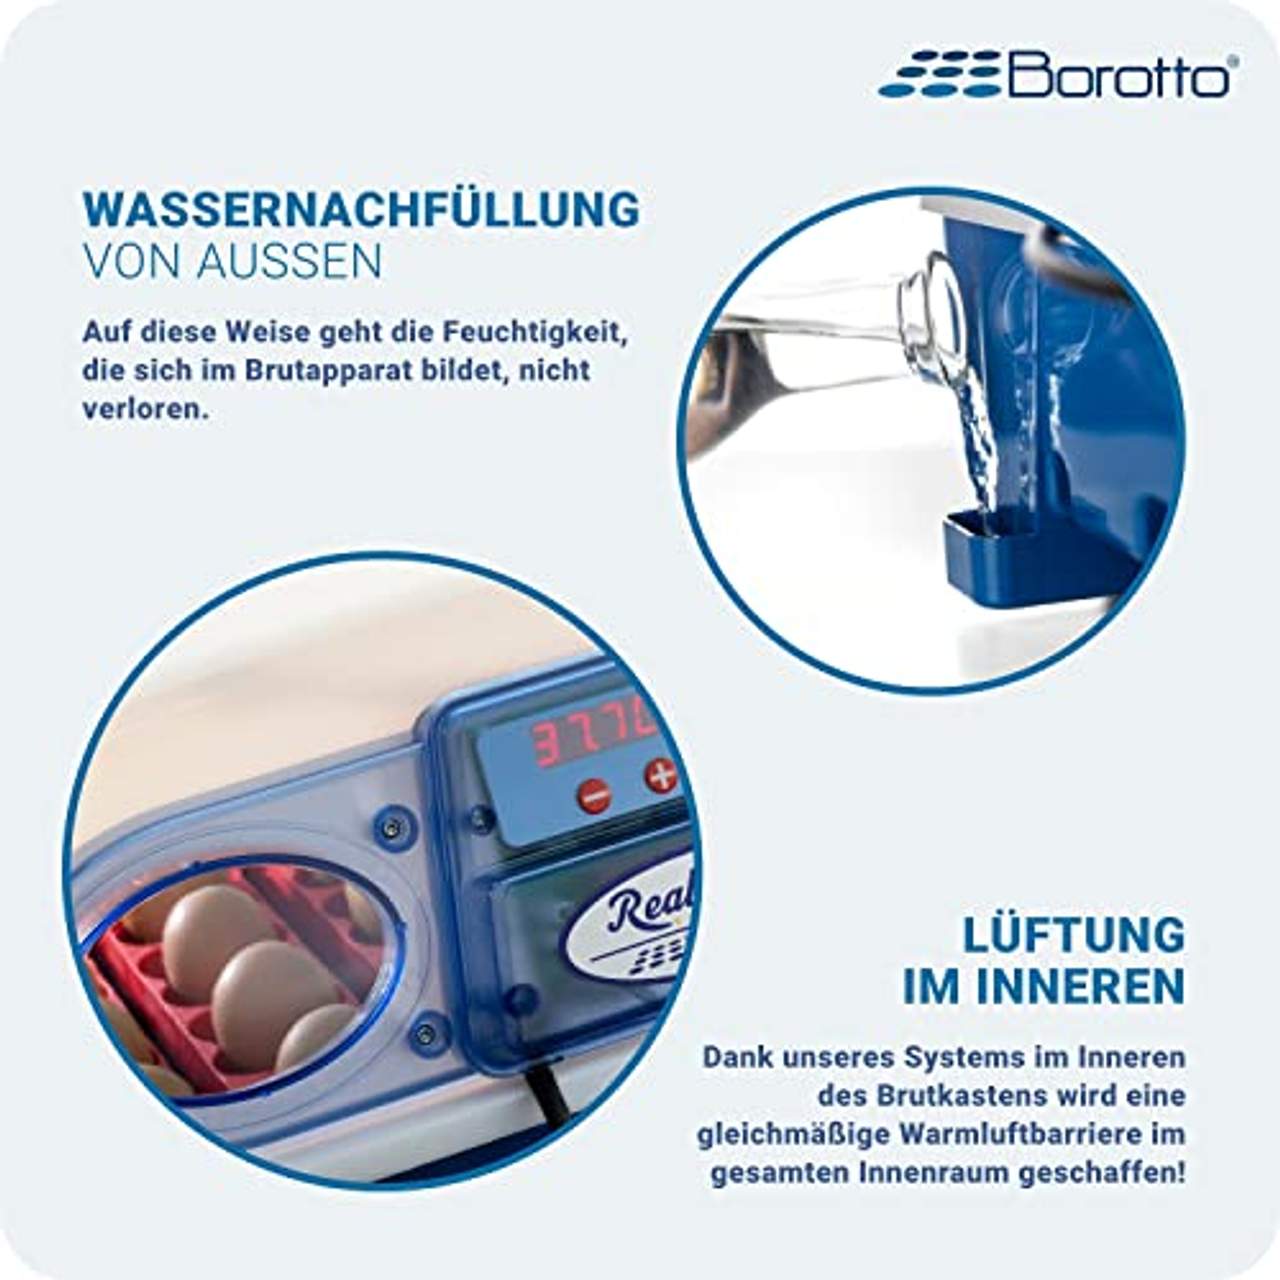 Borotto halbautomatische REAL 24 Patentierte professionelle Brutmaschine